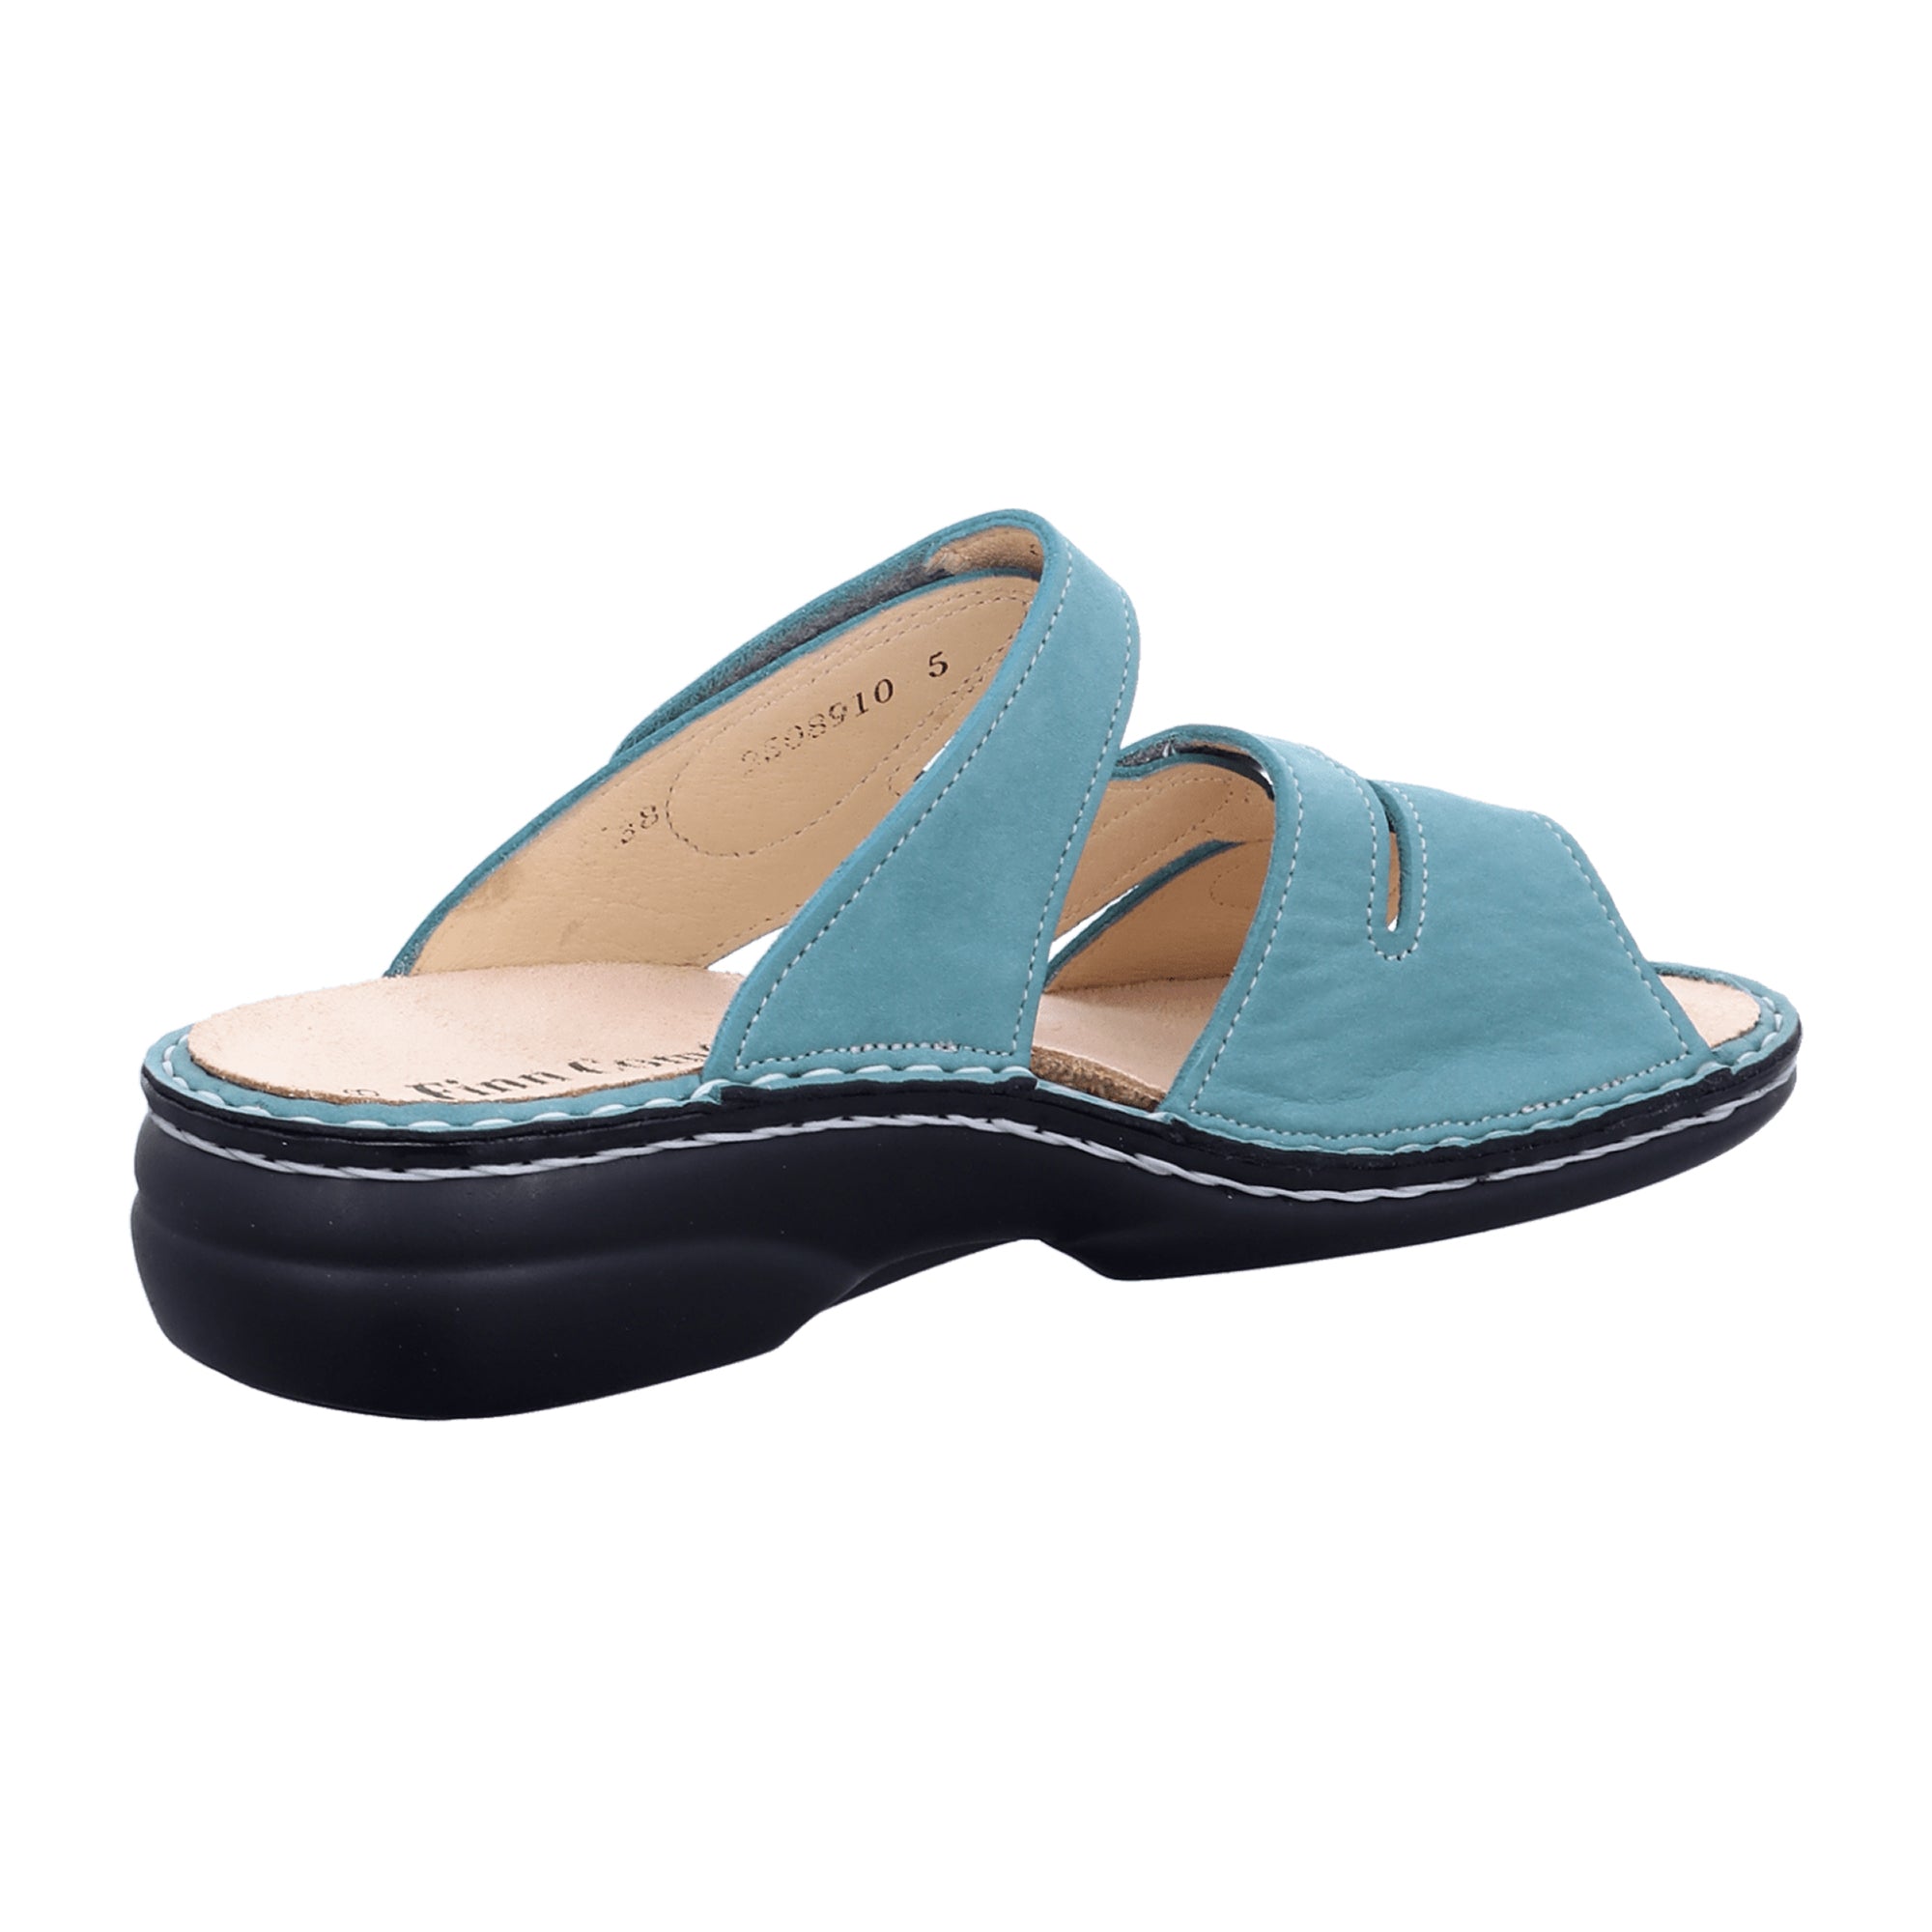 Finn Comfort Ventura-S Women's Comfort Slide Sandals in Ice Green Nubuck Leather, Adjustable Straps - 82568-007484